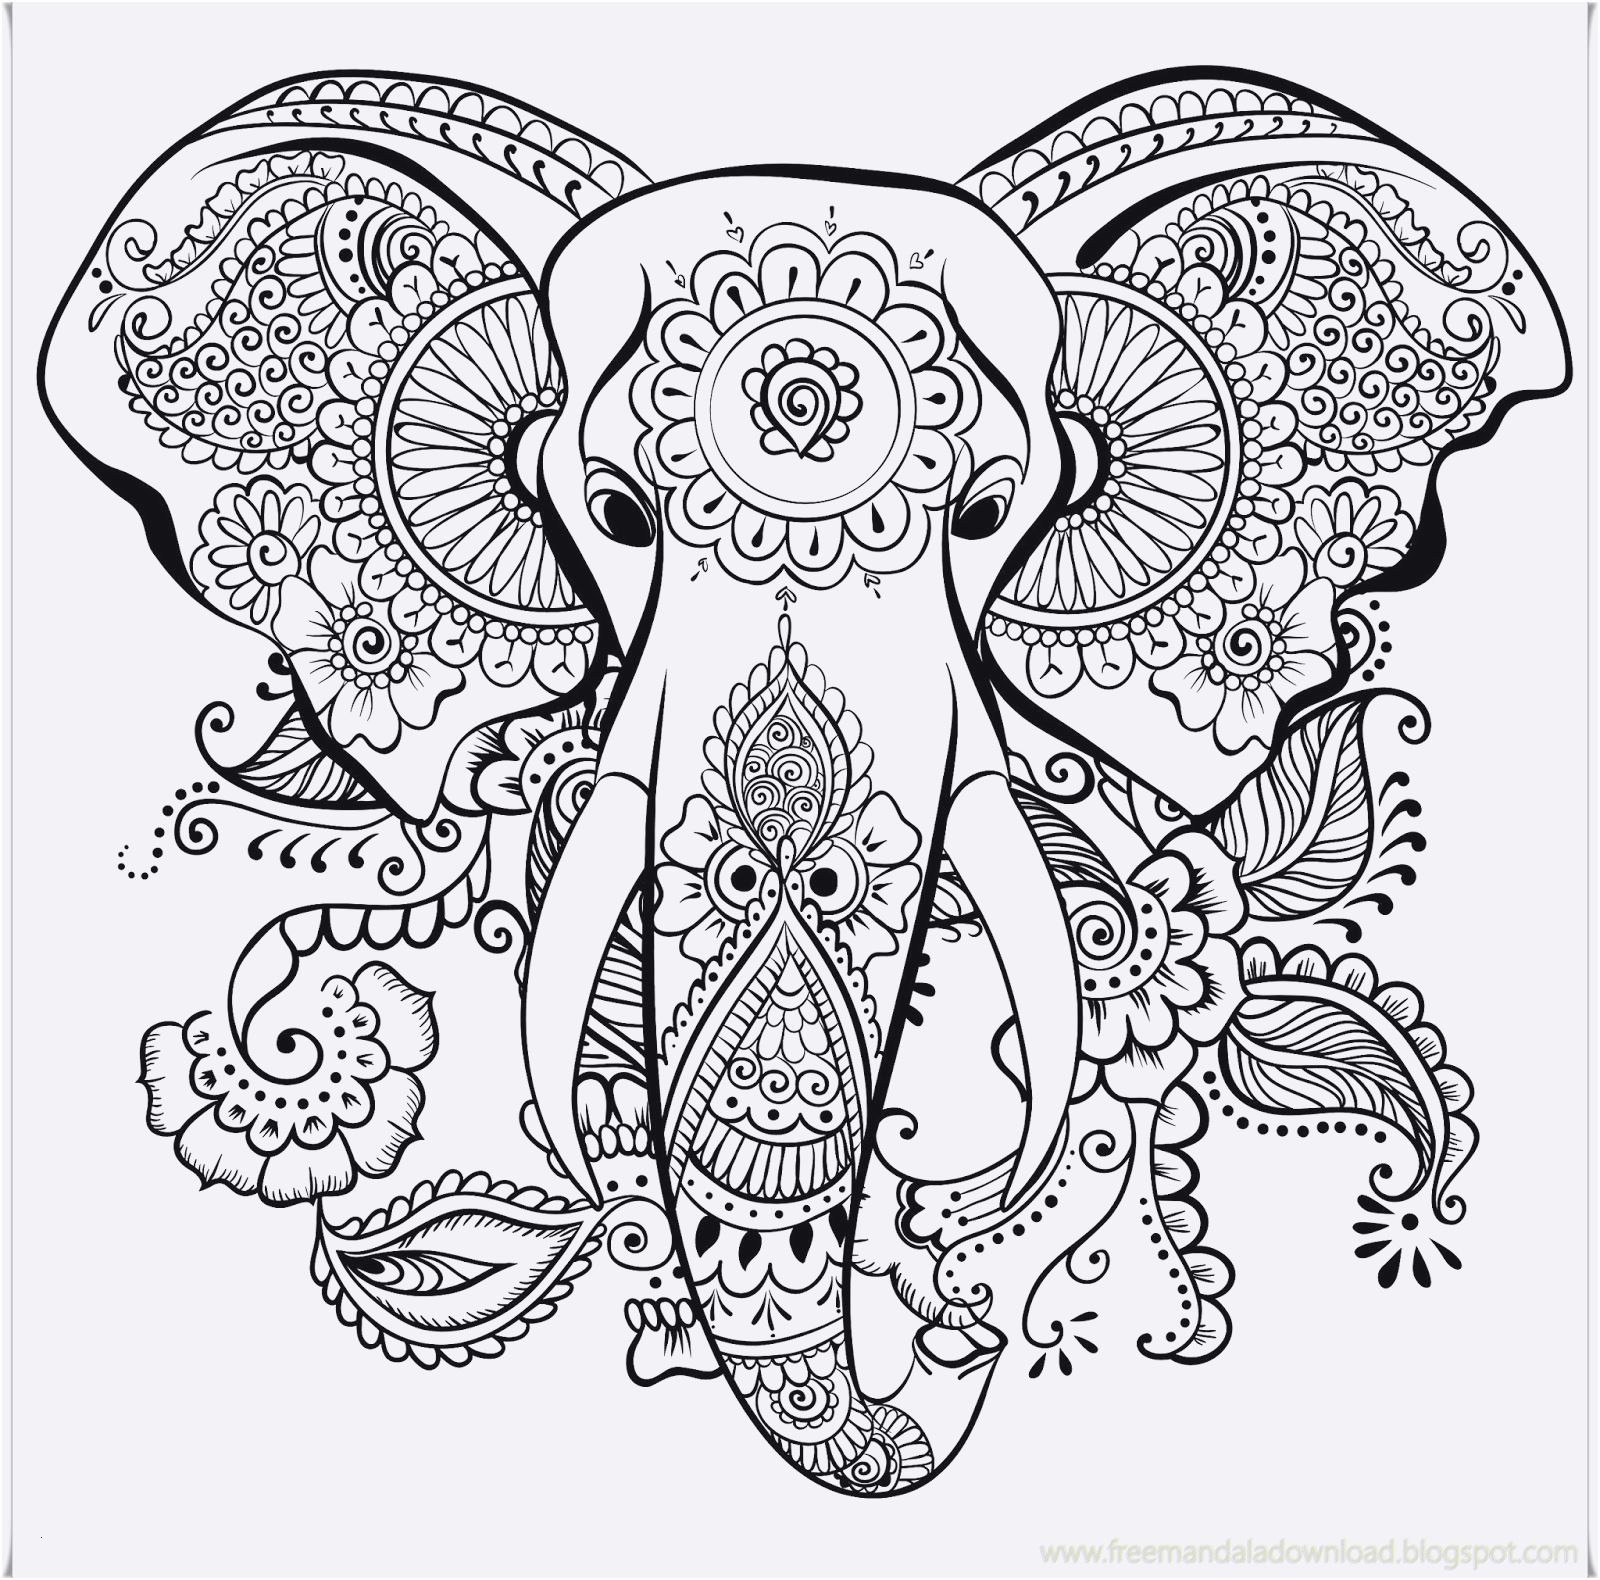 Ausmalbilder Für Erwachsene Elefant
 Elefant Ausmalbild Erwachsene Diy Projects Pinterest